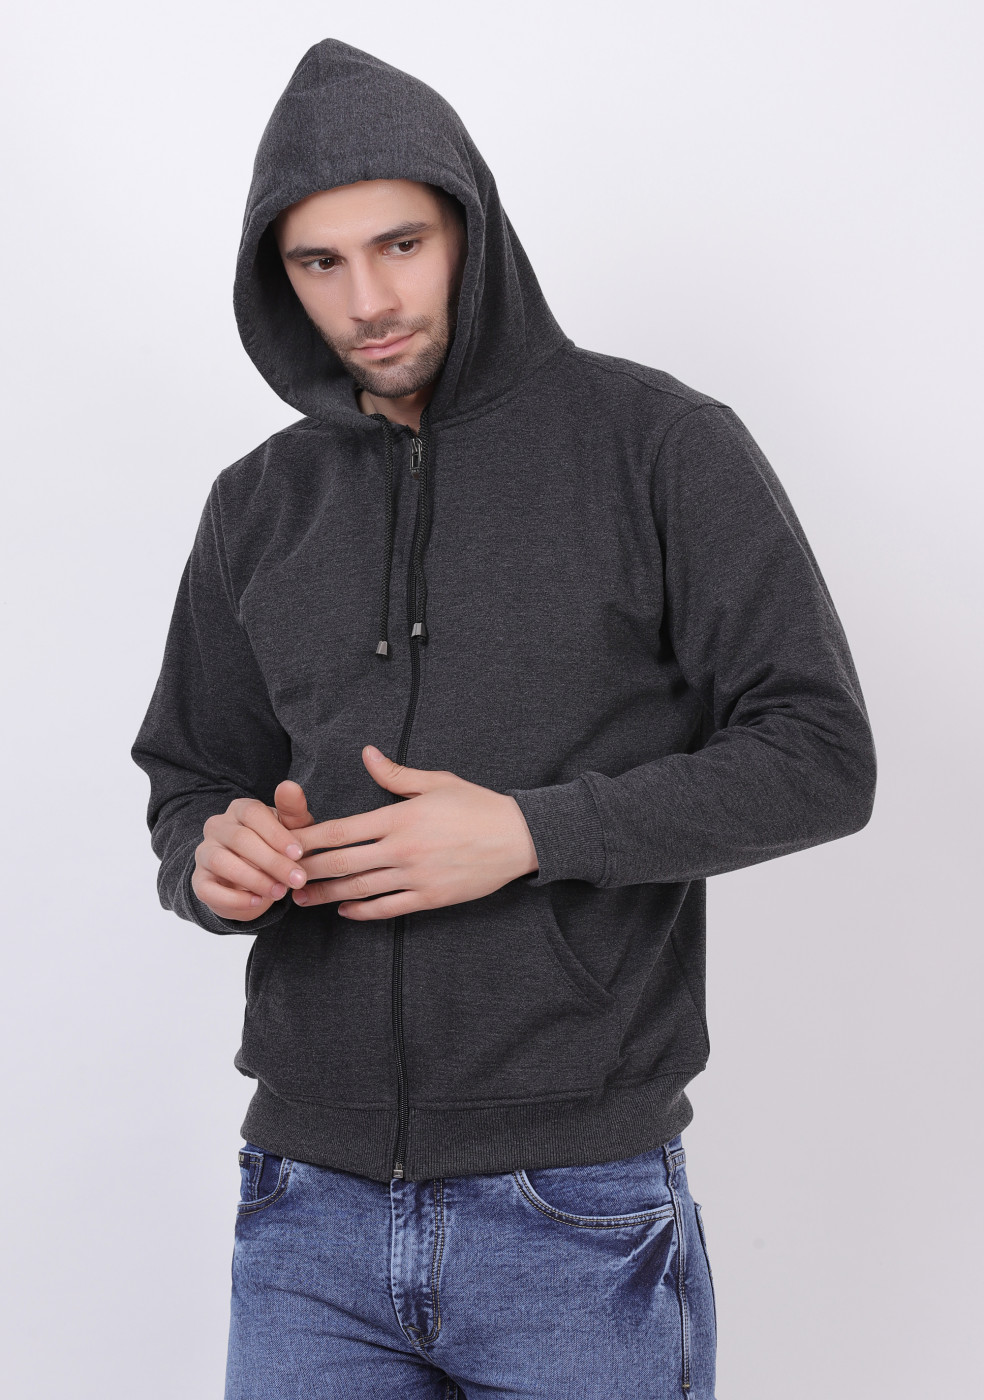 Cotton Full Sleeve Gray Zipper Hoodie For Men